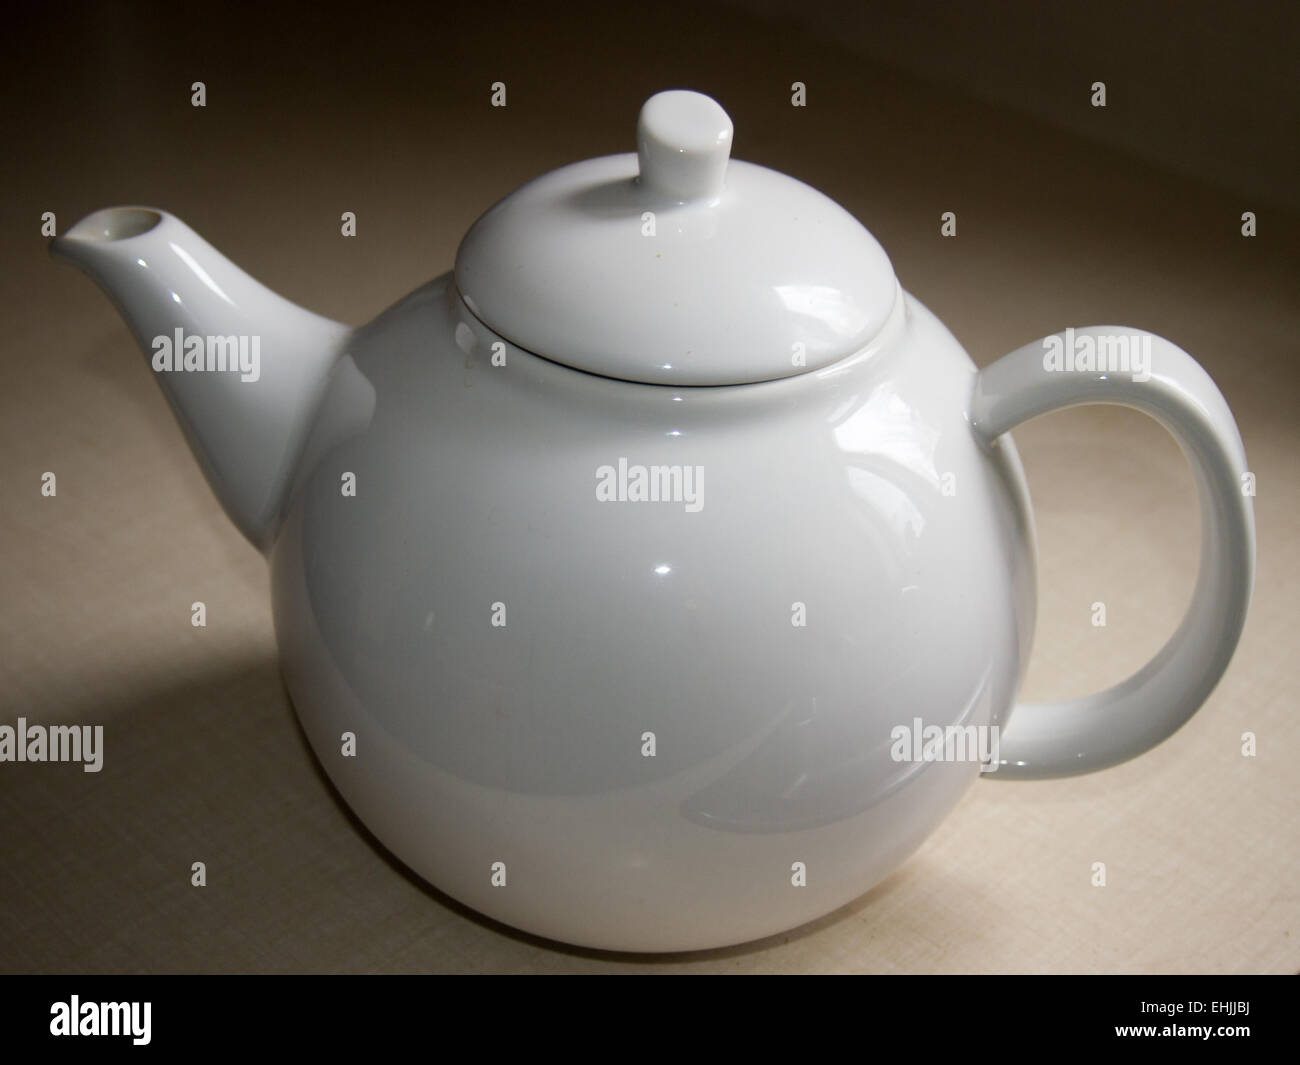 Simple white teapot Stock Photo